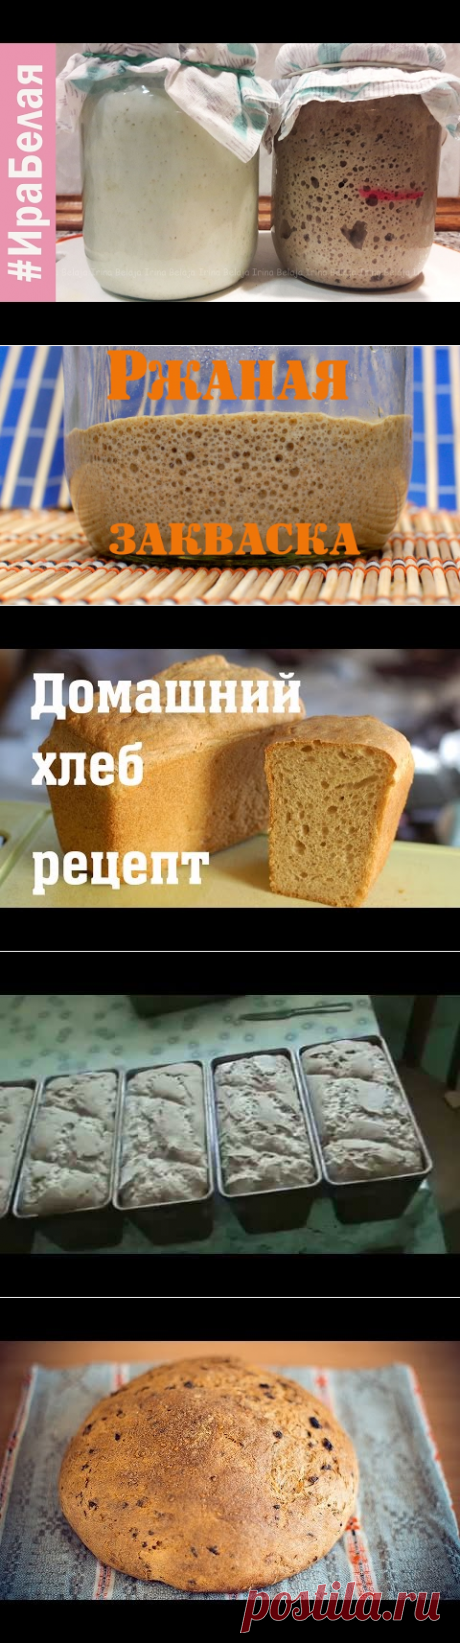 (5) Ржаная закваска для хлеба - пошаговый мастер-класс. - YouTube